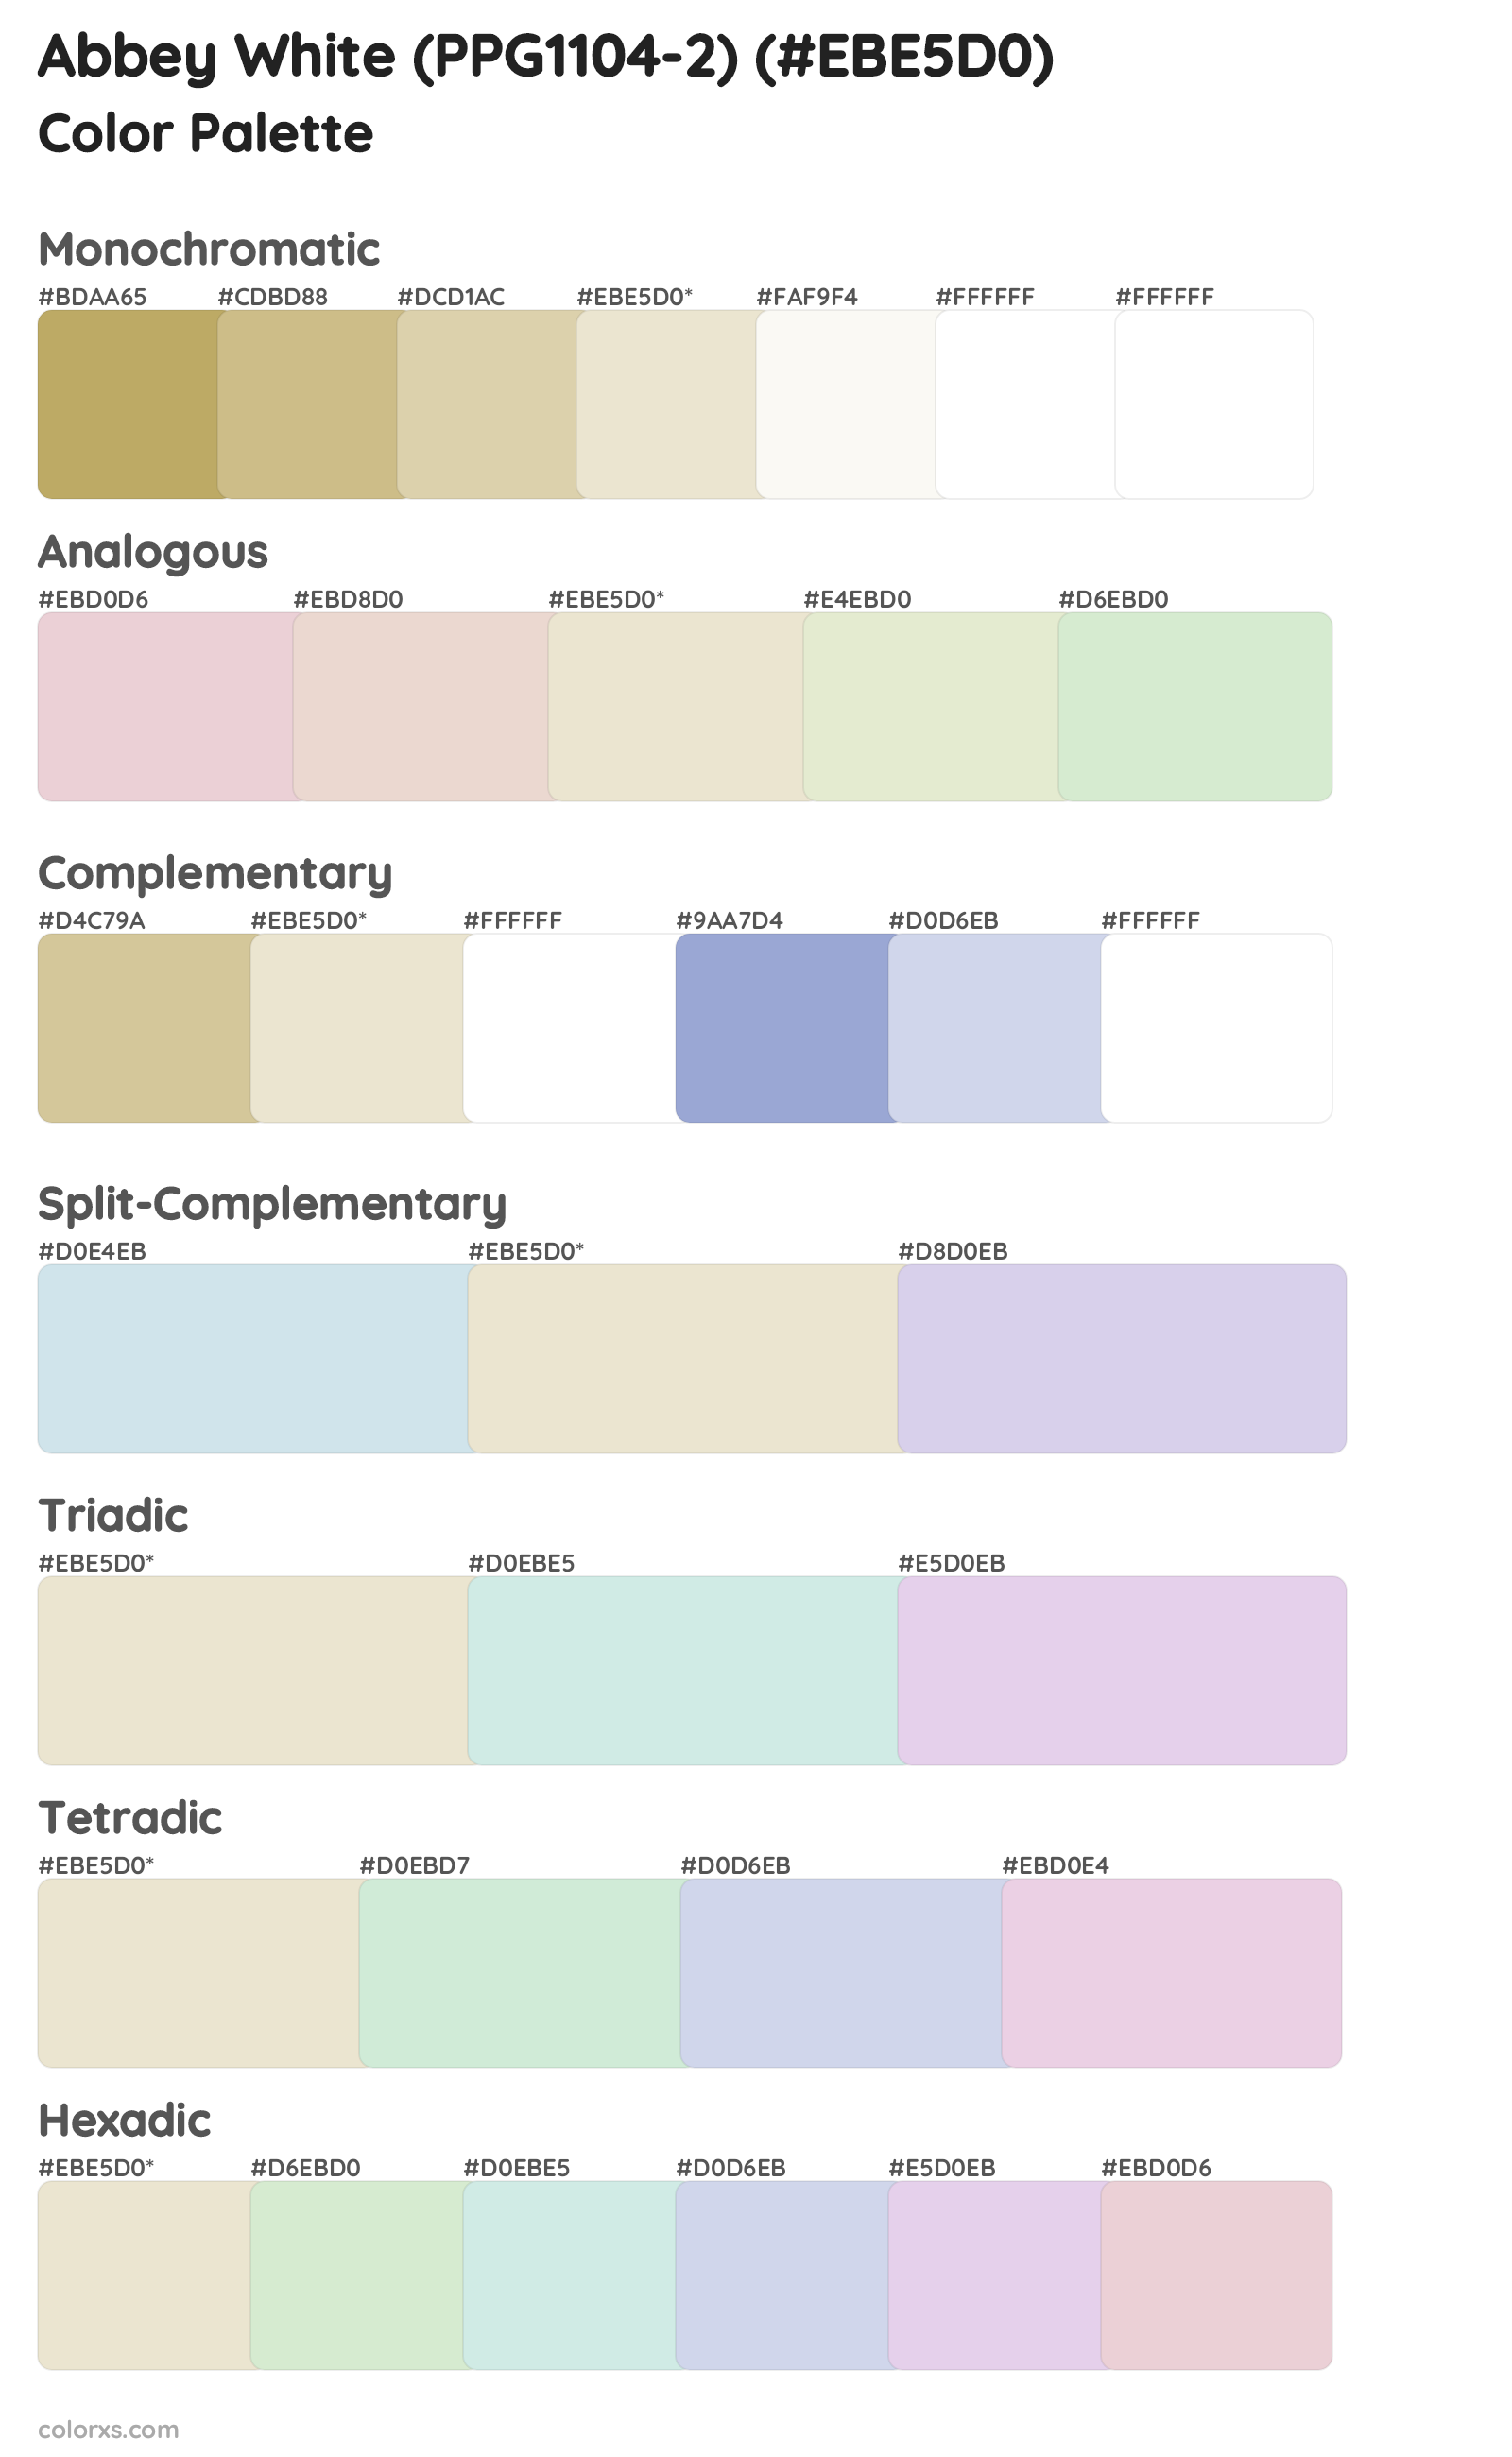 Abbey White (PPG1104-2) Color Scheme Palettes